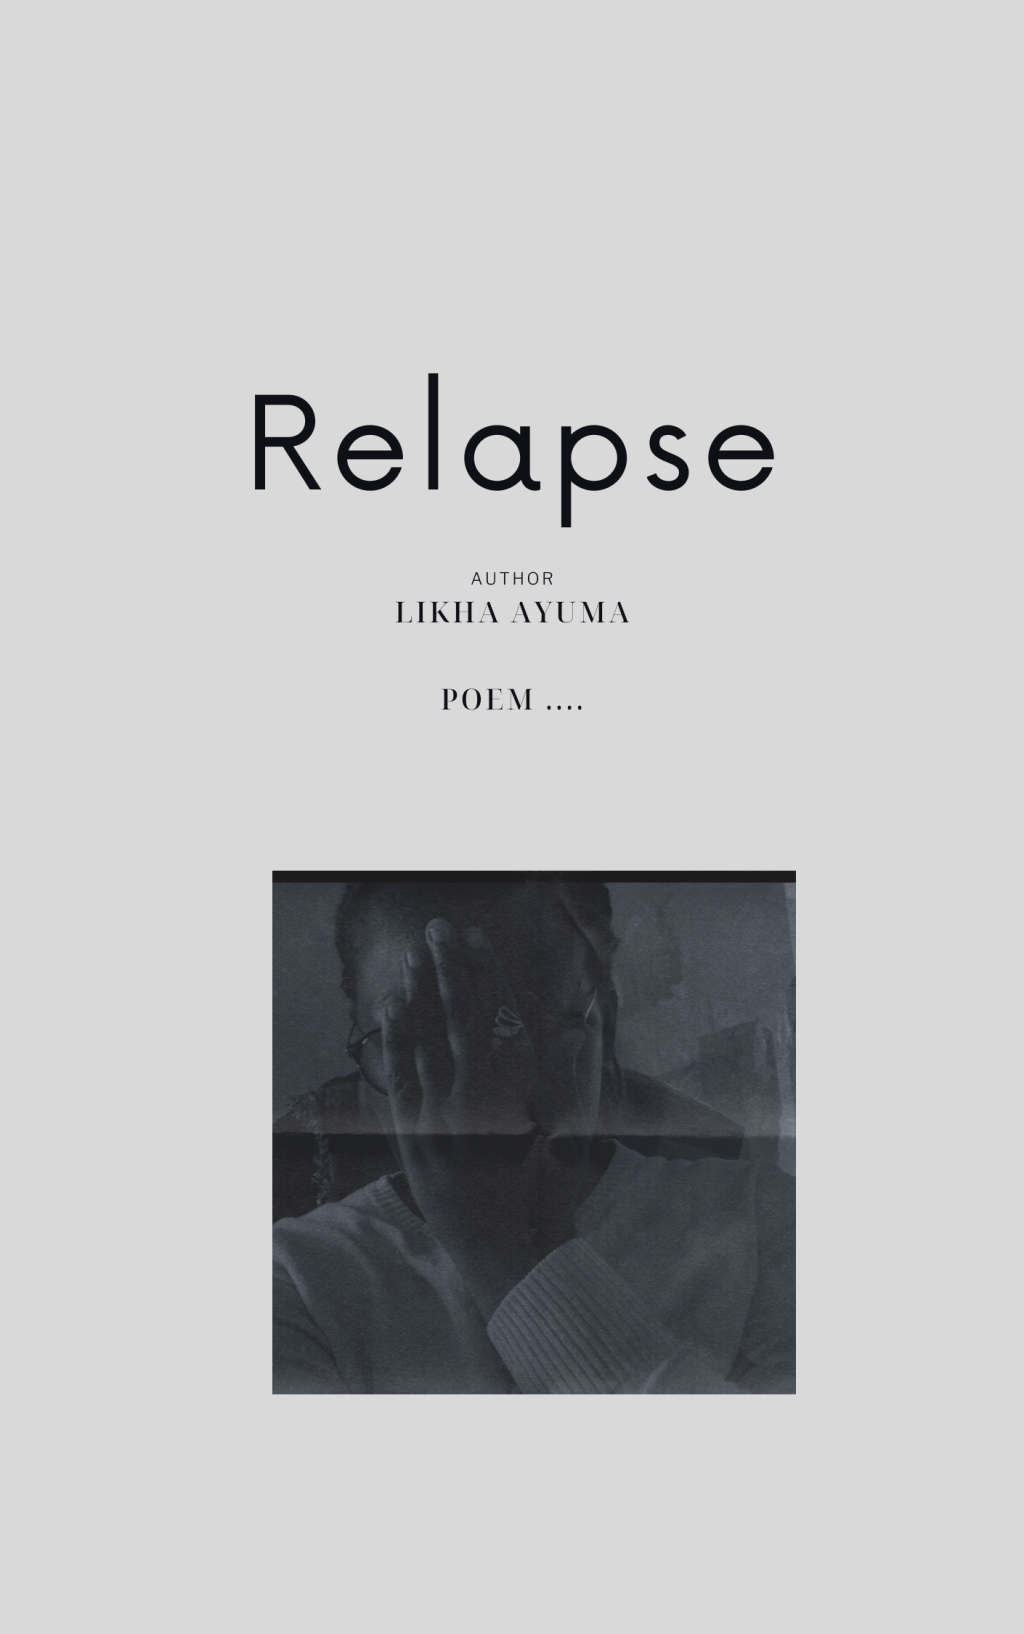 Relapse… |• a poem by Likha Ayuma